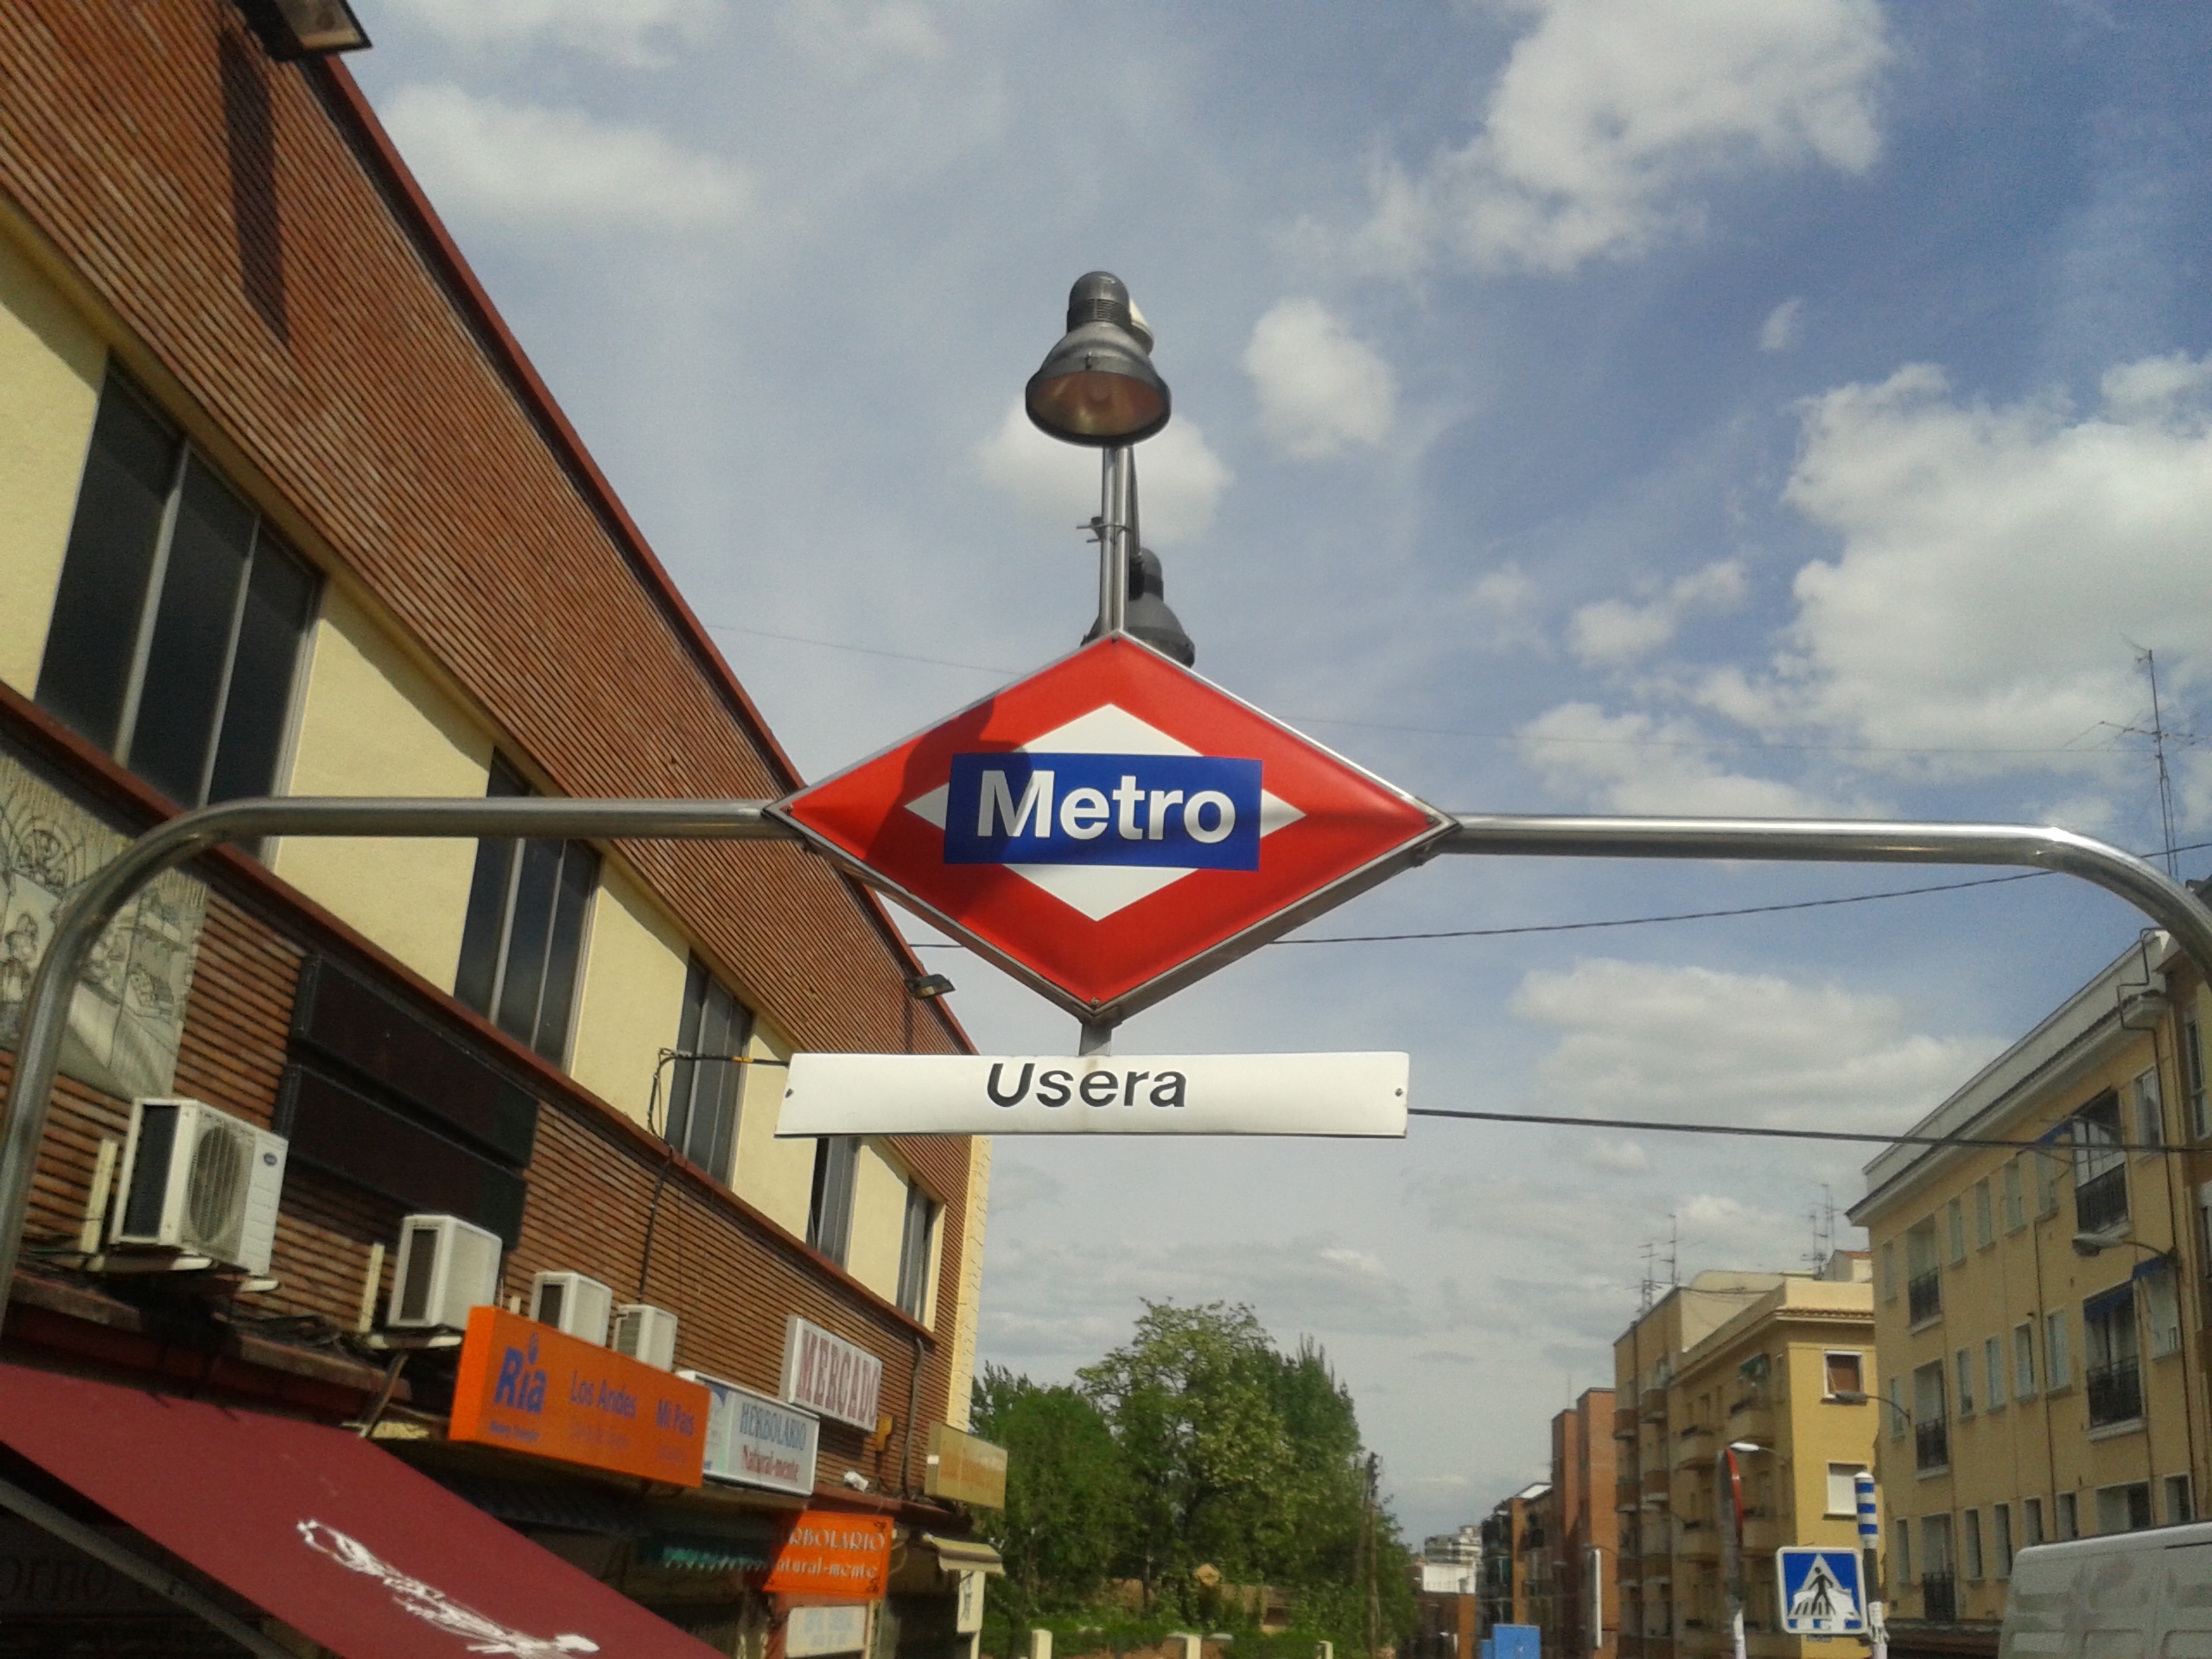 Metro de Usera